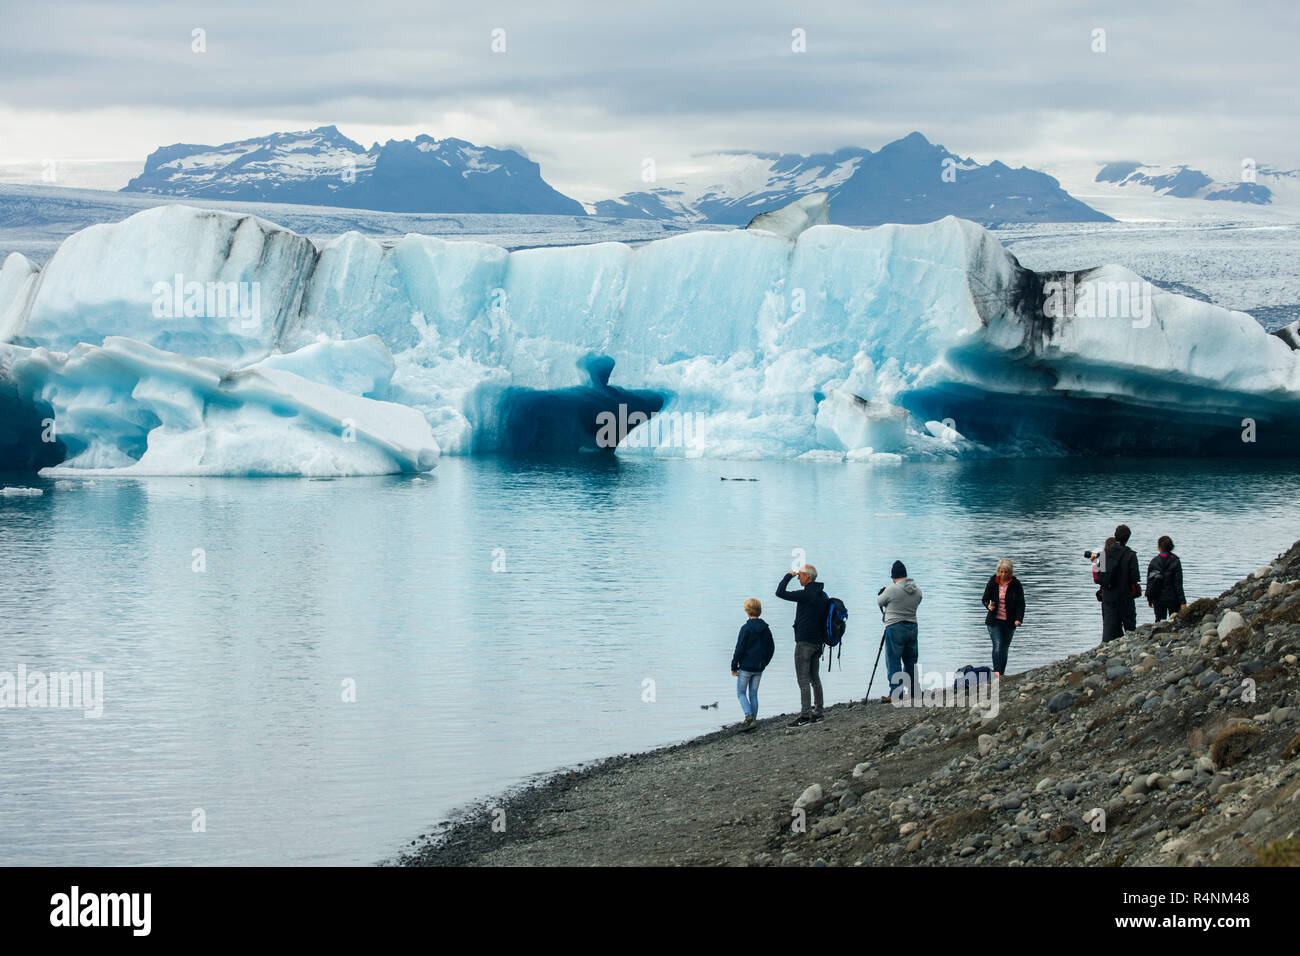 Glacier jökulsárlón Lagoon dans le sud-est de l'Islande est l'un des pays les plus célèbres destinations de voyage. Le lagon se trouve à la tête de la Glacier Breidamerkurjokull et continue d'augmenter en taille que la fonte des glaciers. Le lac, le plus profond d'Islande, a quadruplé de taille depuis les années 1970. Célèbre pour ses paysages semblables à celles de l'Arctique, le lagon est apparu dans un certain nombre de films, dont deux films de James Bond (tuer et Meurs un autre jour) et Batman Begins.Â Banque D'Images